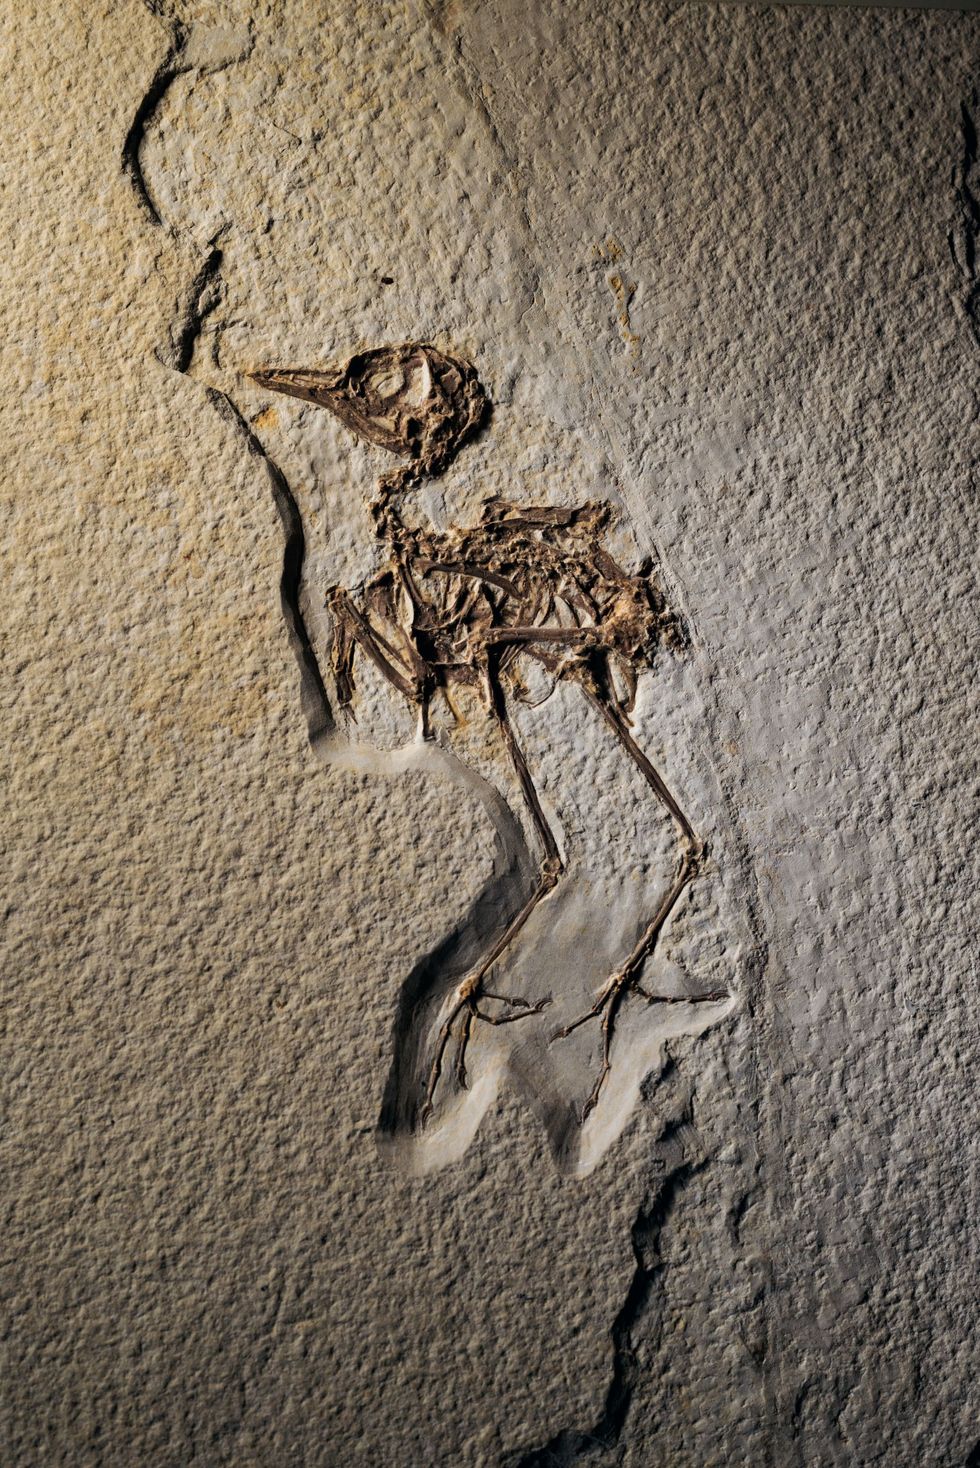 Fossielen van vissen worden veel vaker gevonden maar in het kalkgesteente van Fossil Lake in Wyoming zijn ook meer dan honderd volledige fossielen van vogels gevonden De 52 miljoen jaar oude steenlaag bevat een overvloed aan buitengewoon goed bewaard gebleven fossielen zoals deze vroege zangvogel